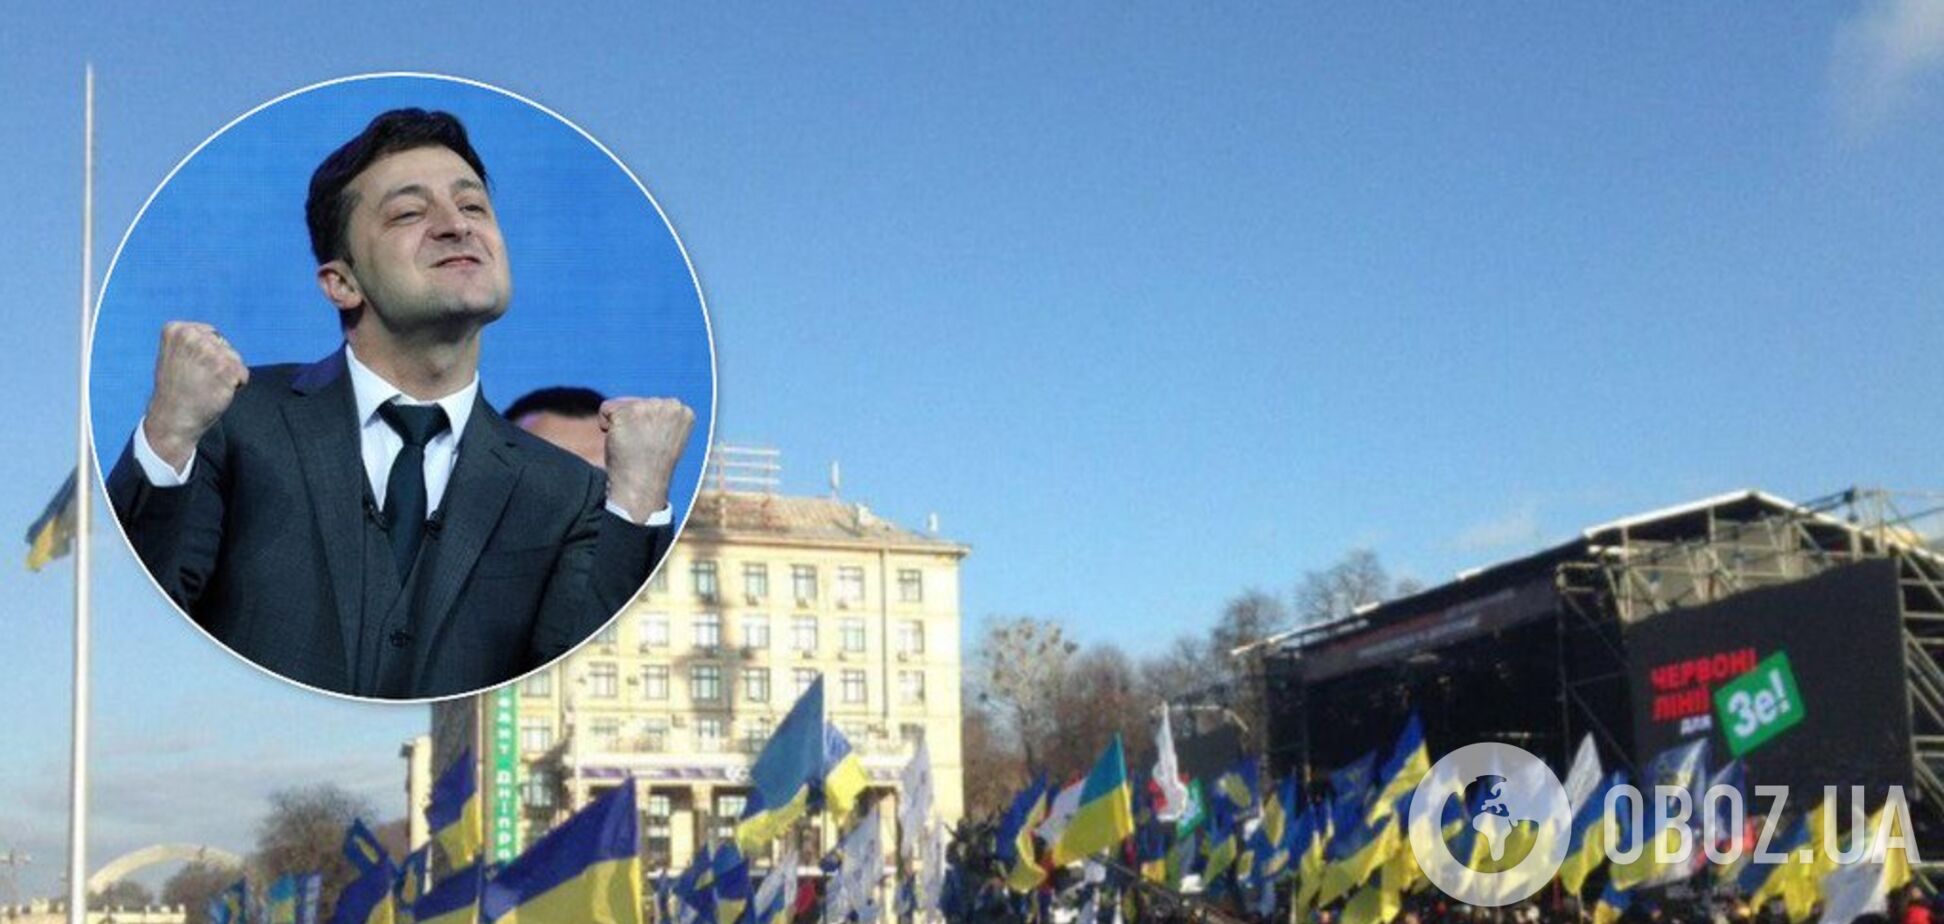 Зеленского упрекнули из-за траура в день протестов